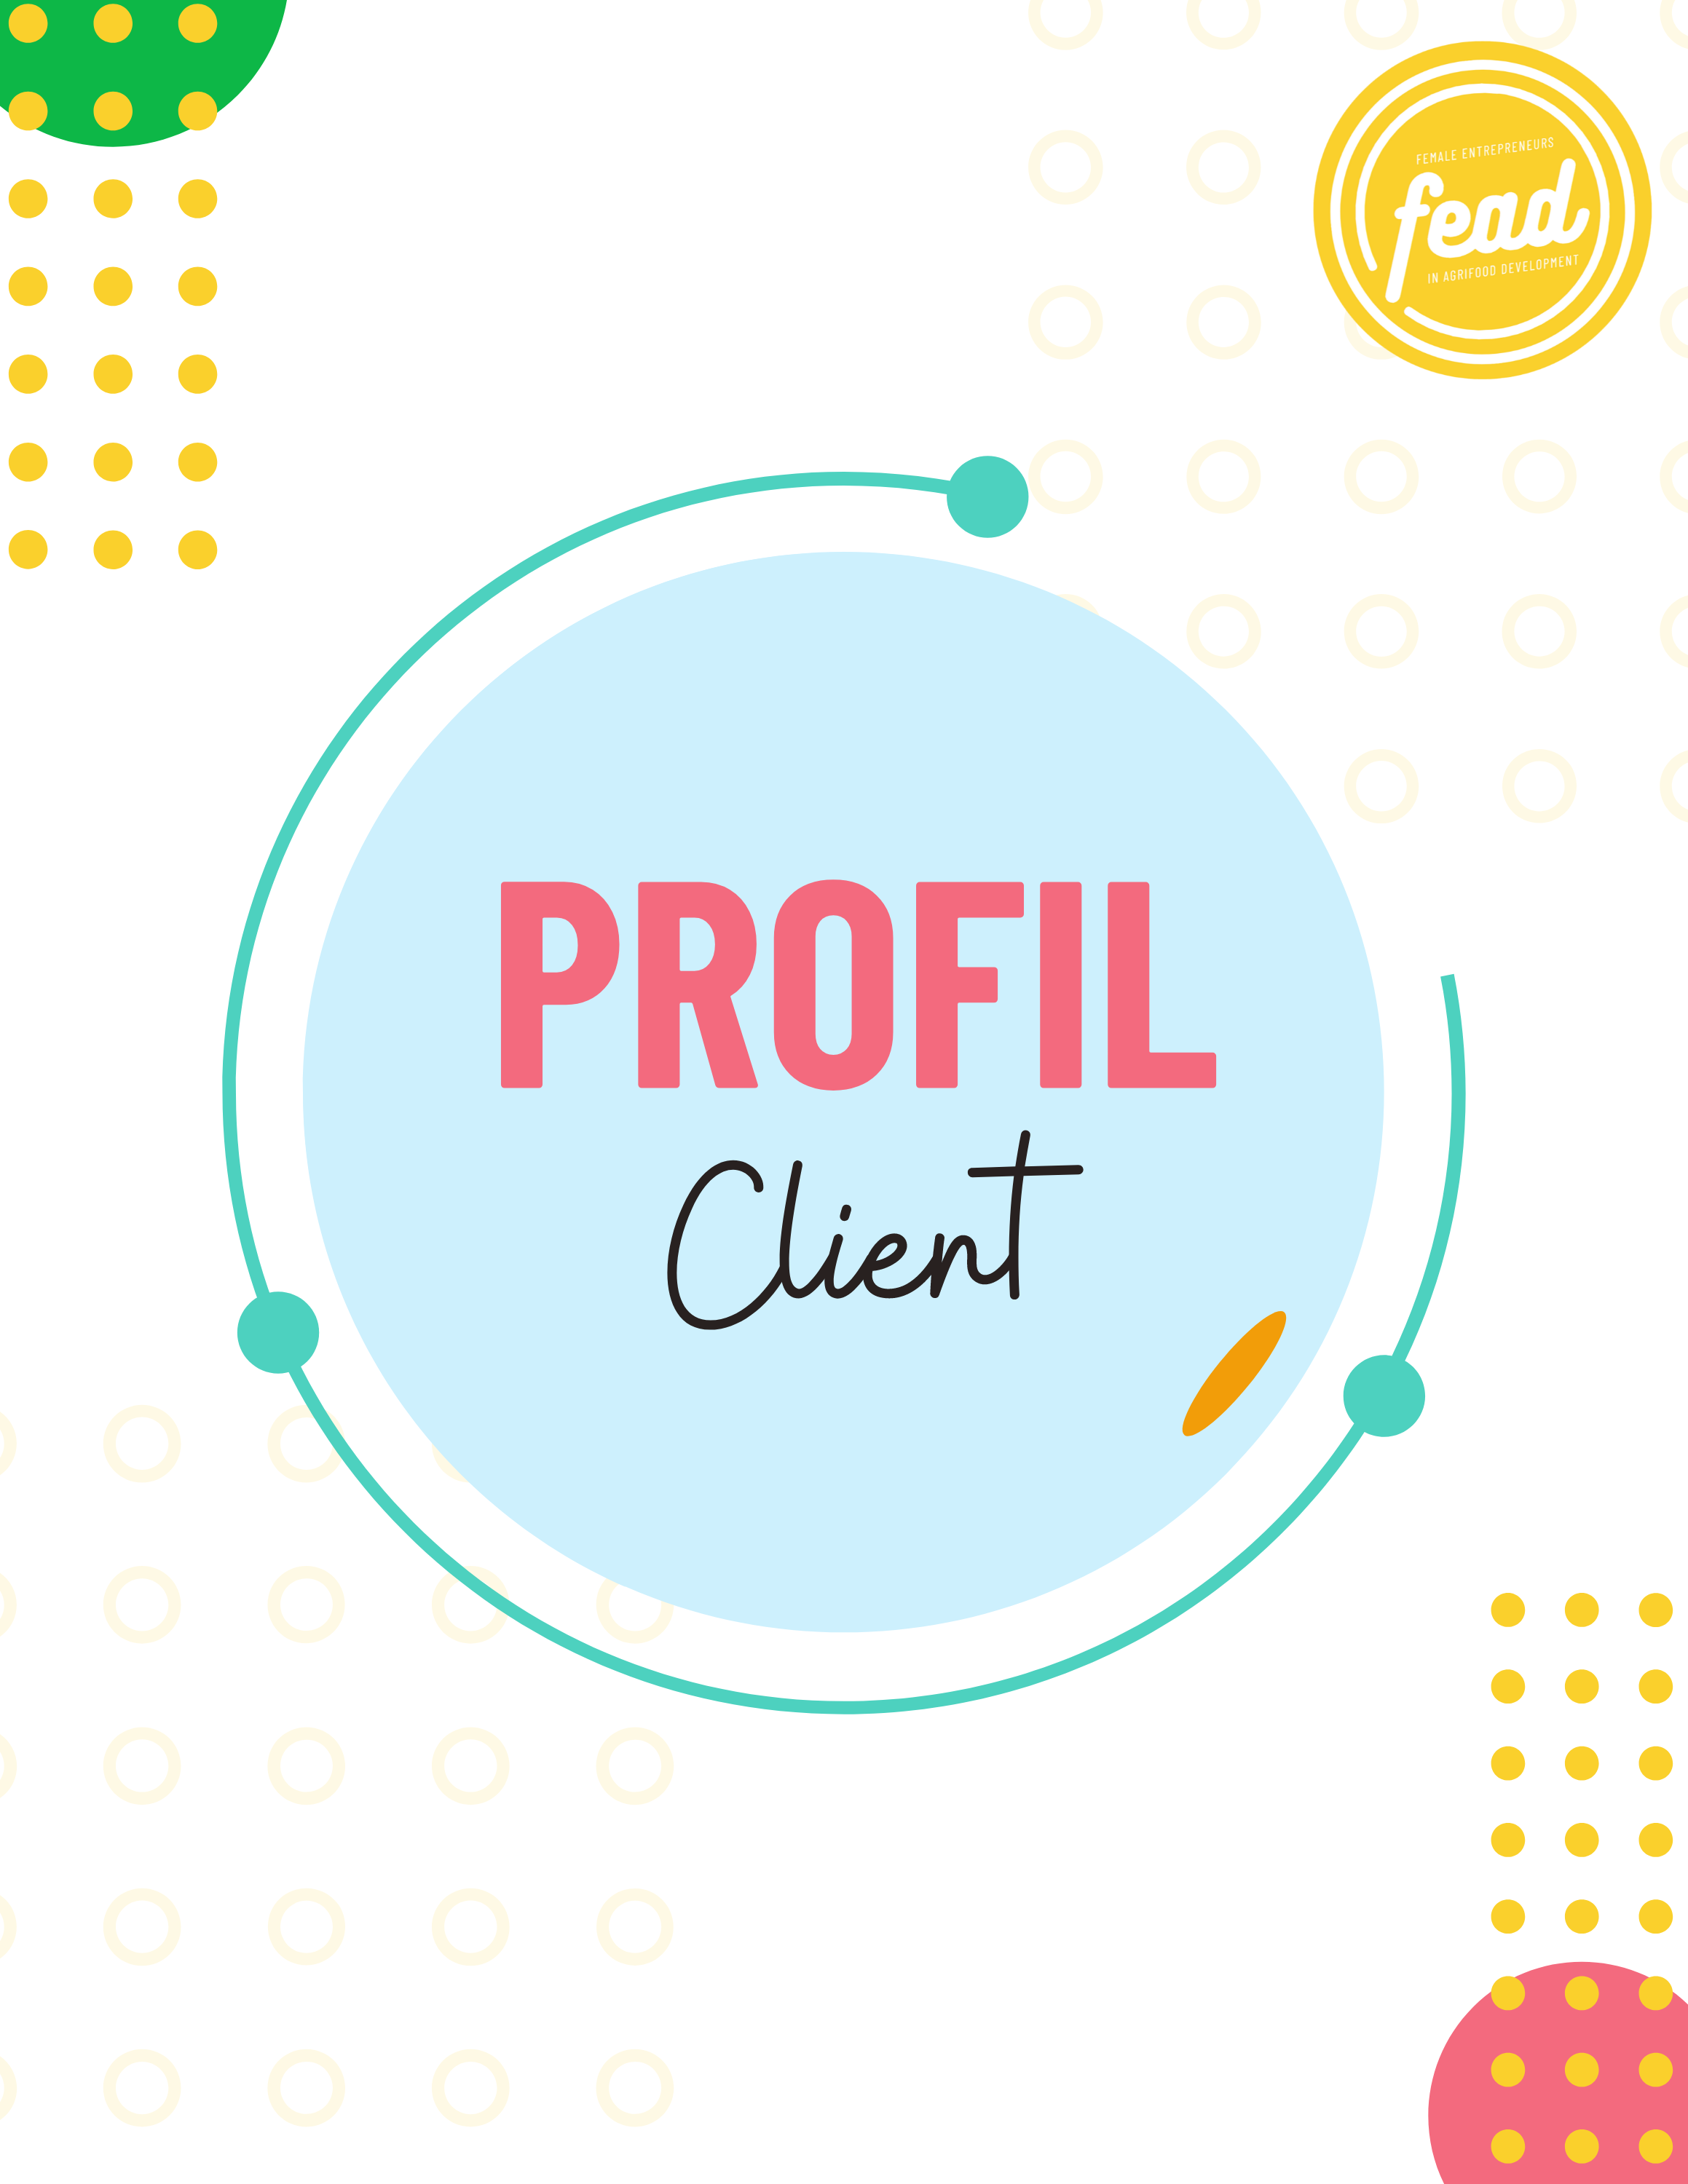 Profil Client